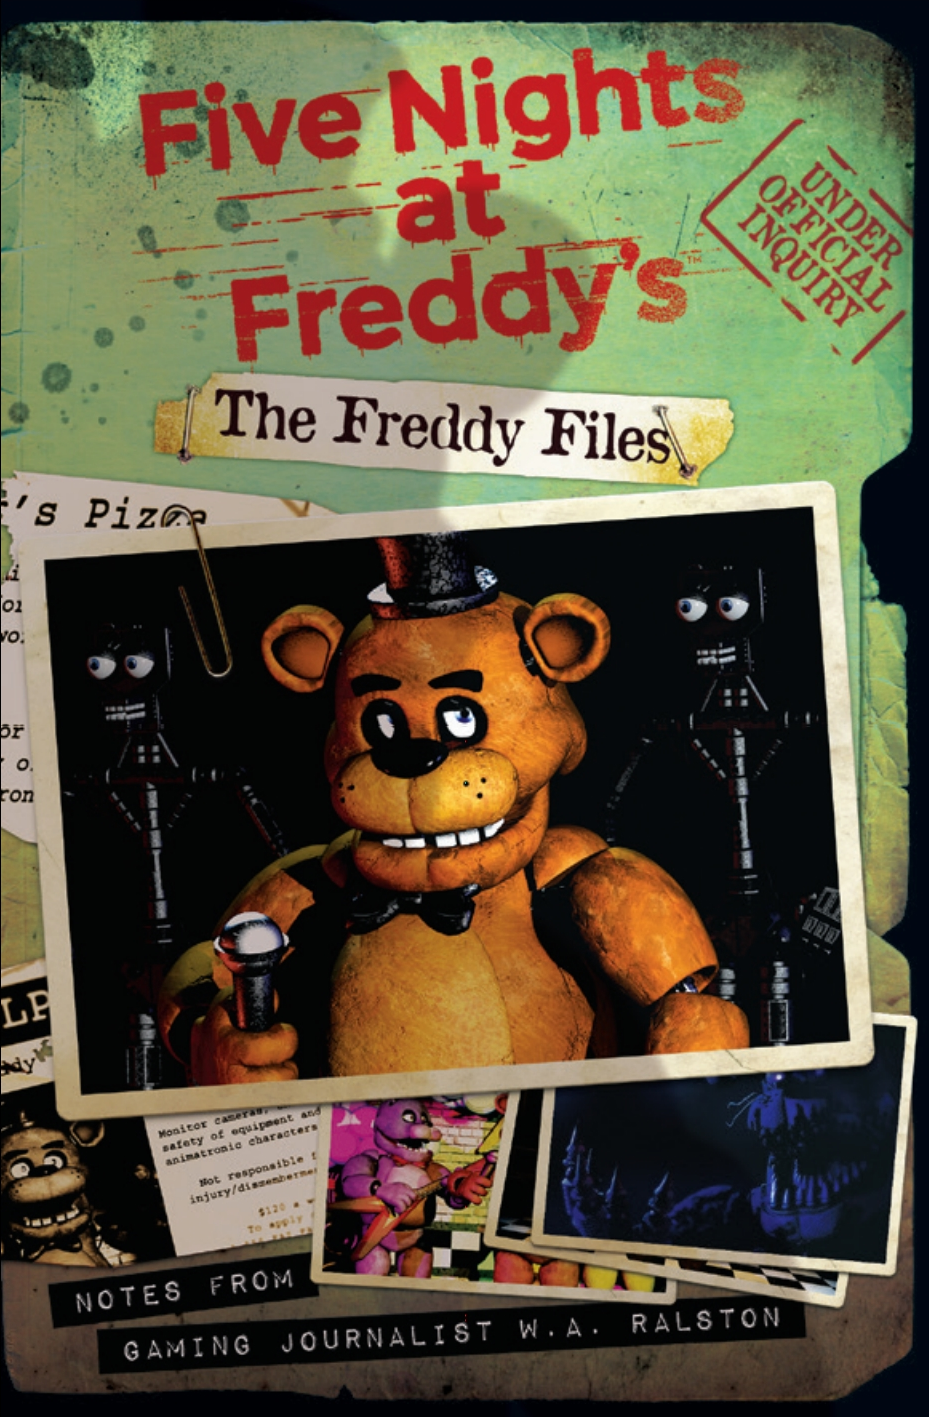 Fnaf files. Файлы Фредди обновлённое издание. Five Nights at Freddy's файлы Фредди. Книга 5 ночей с Фредди файлы Фредди. Пять ночей с Фредди файлы Фредди.